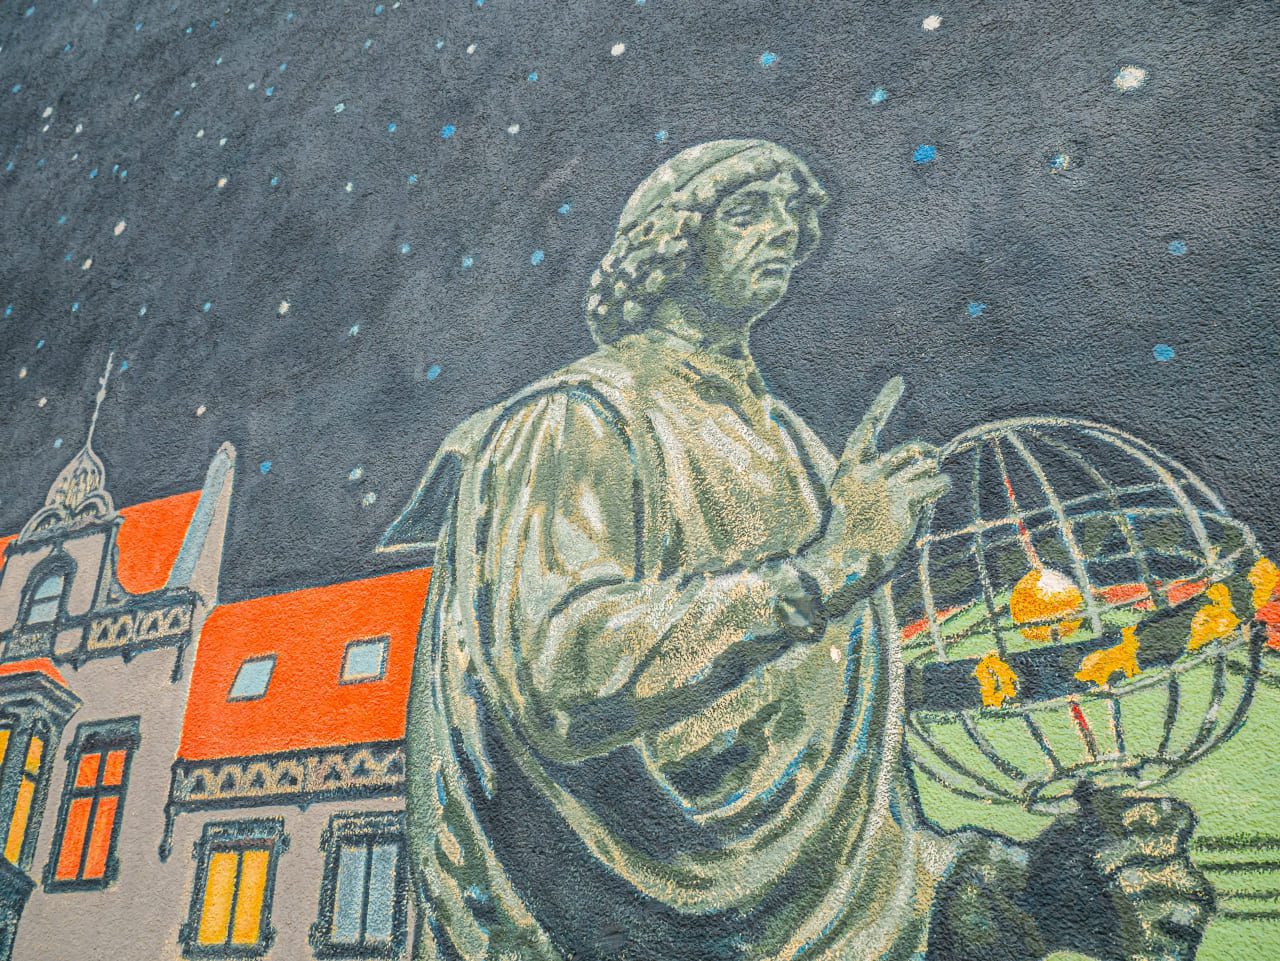 Toruń Kopernik mural